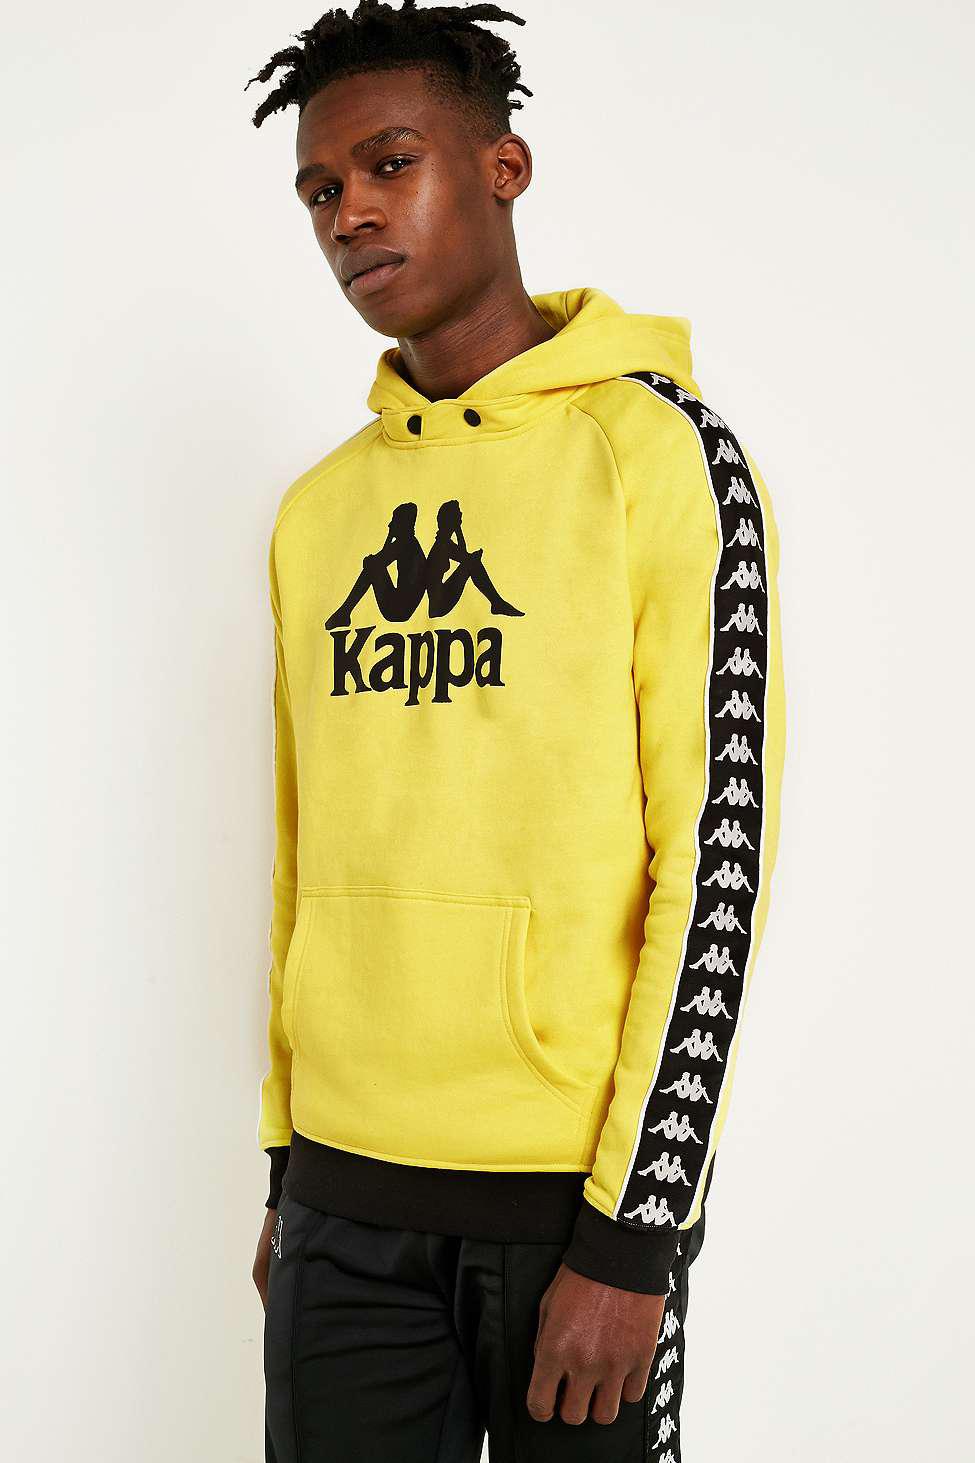 Kappa Yellow Sweatshirt Store, 53% OFF | www.ingeniovirtual.com